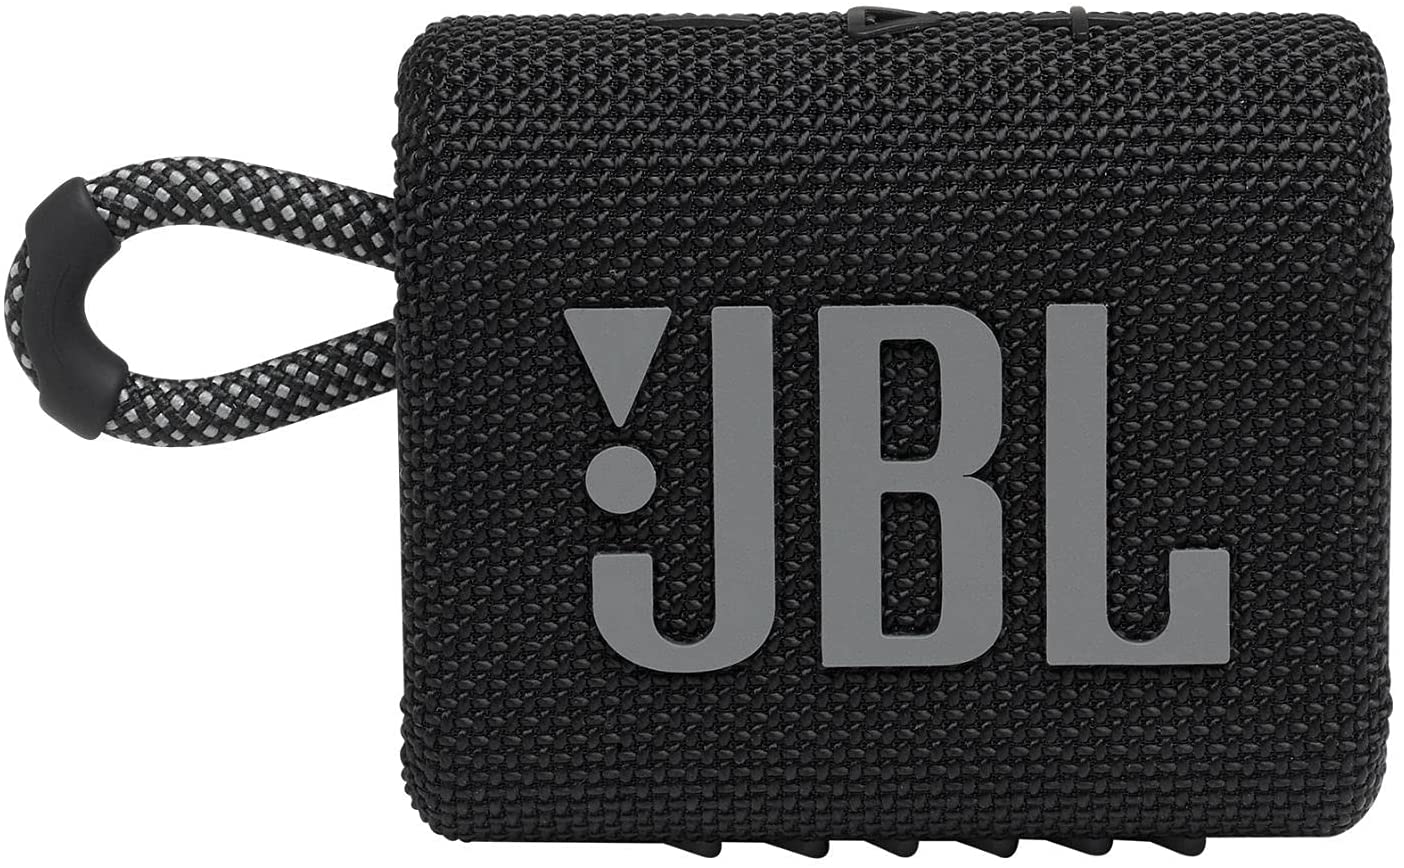 JBL Go 3 Compact Speaker